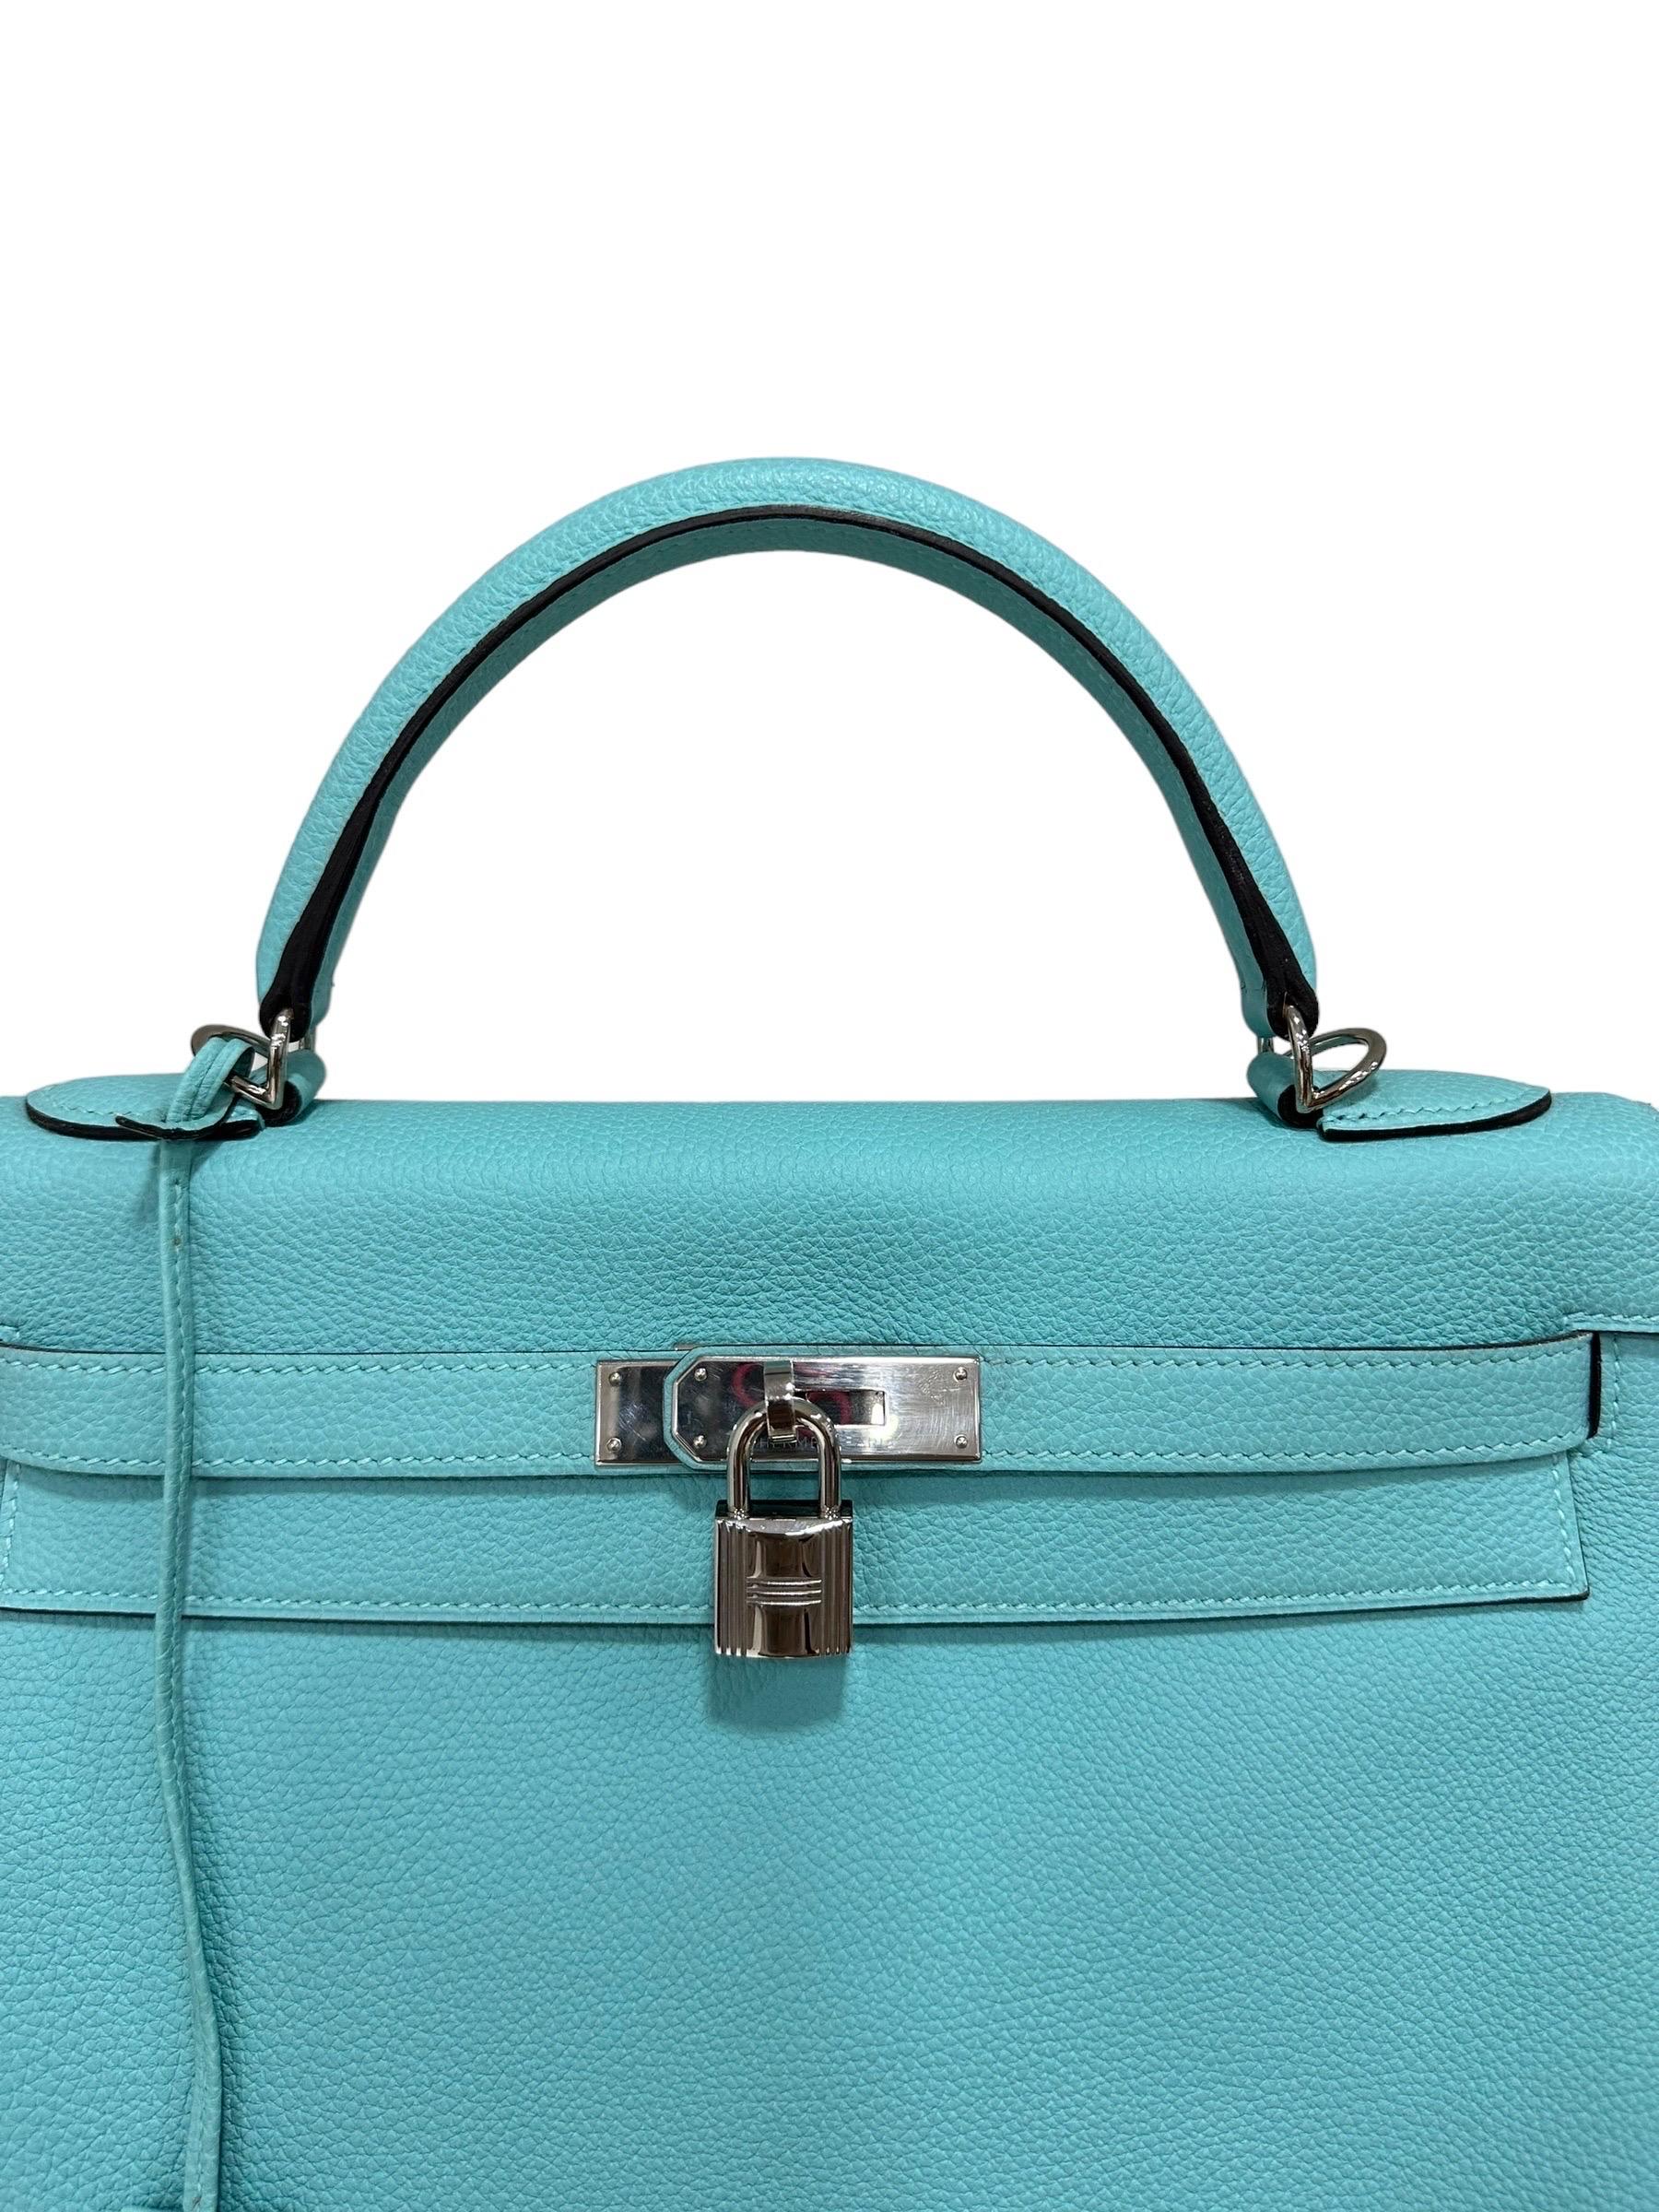 Hermès-Firmentasche, Modell Kelly, Nr. 32, hergestellt aus Pelle Clemence, morbide mit großem Granatapfel, in der Farbe Blue Atoll. Ausgestattet mit einer Klappe zum Einstecken in den Boden, mit einem Riemen und einer Schließe mit Klettverschluss.